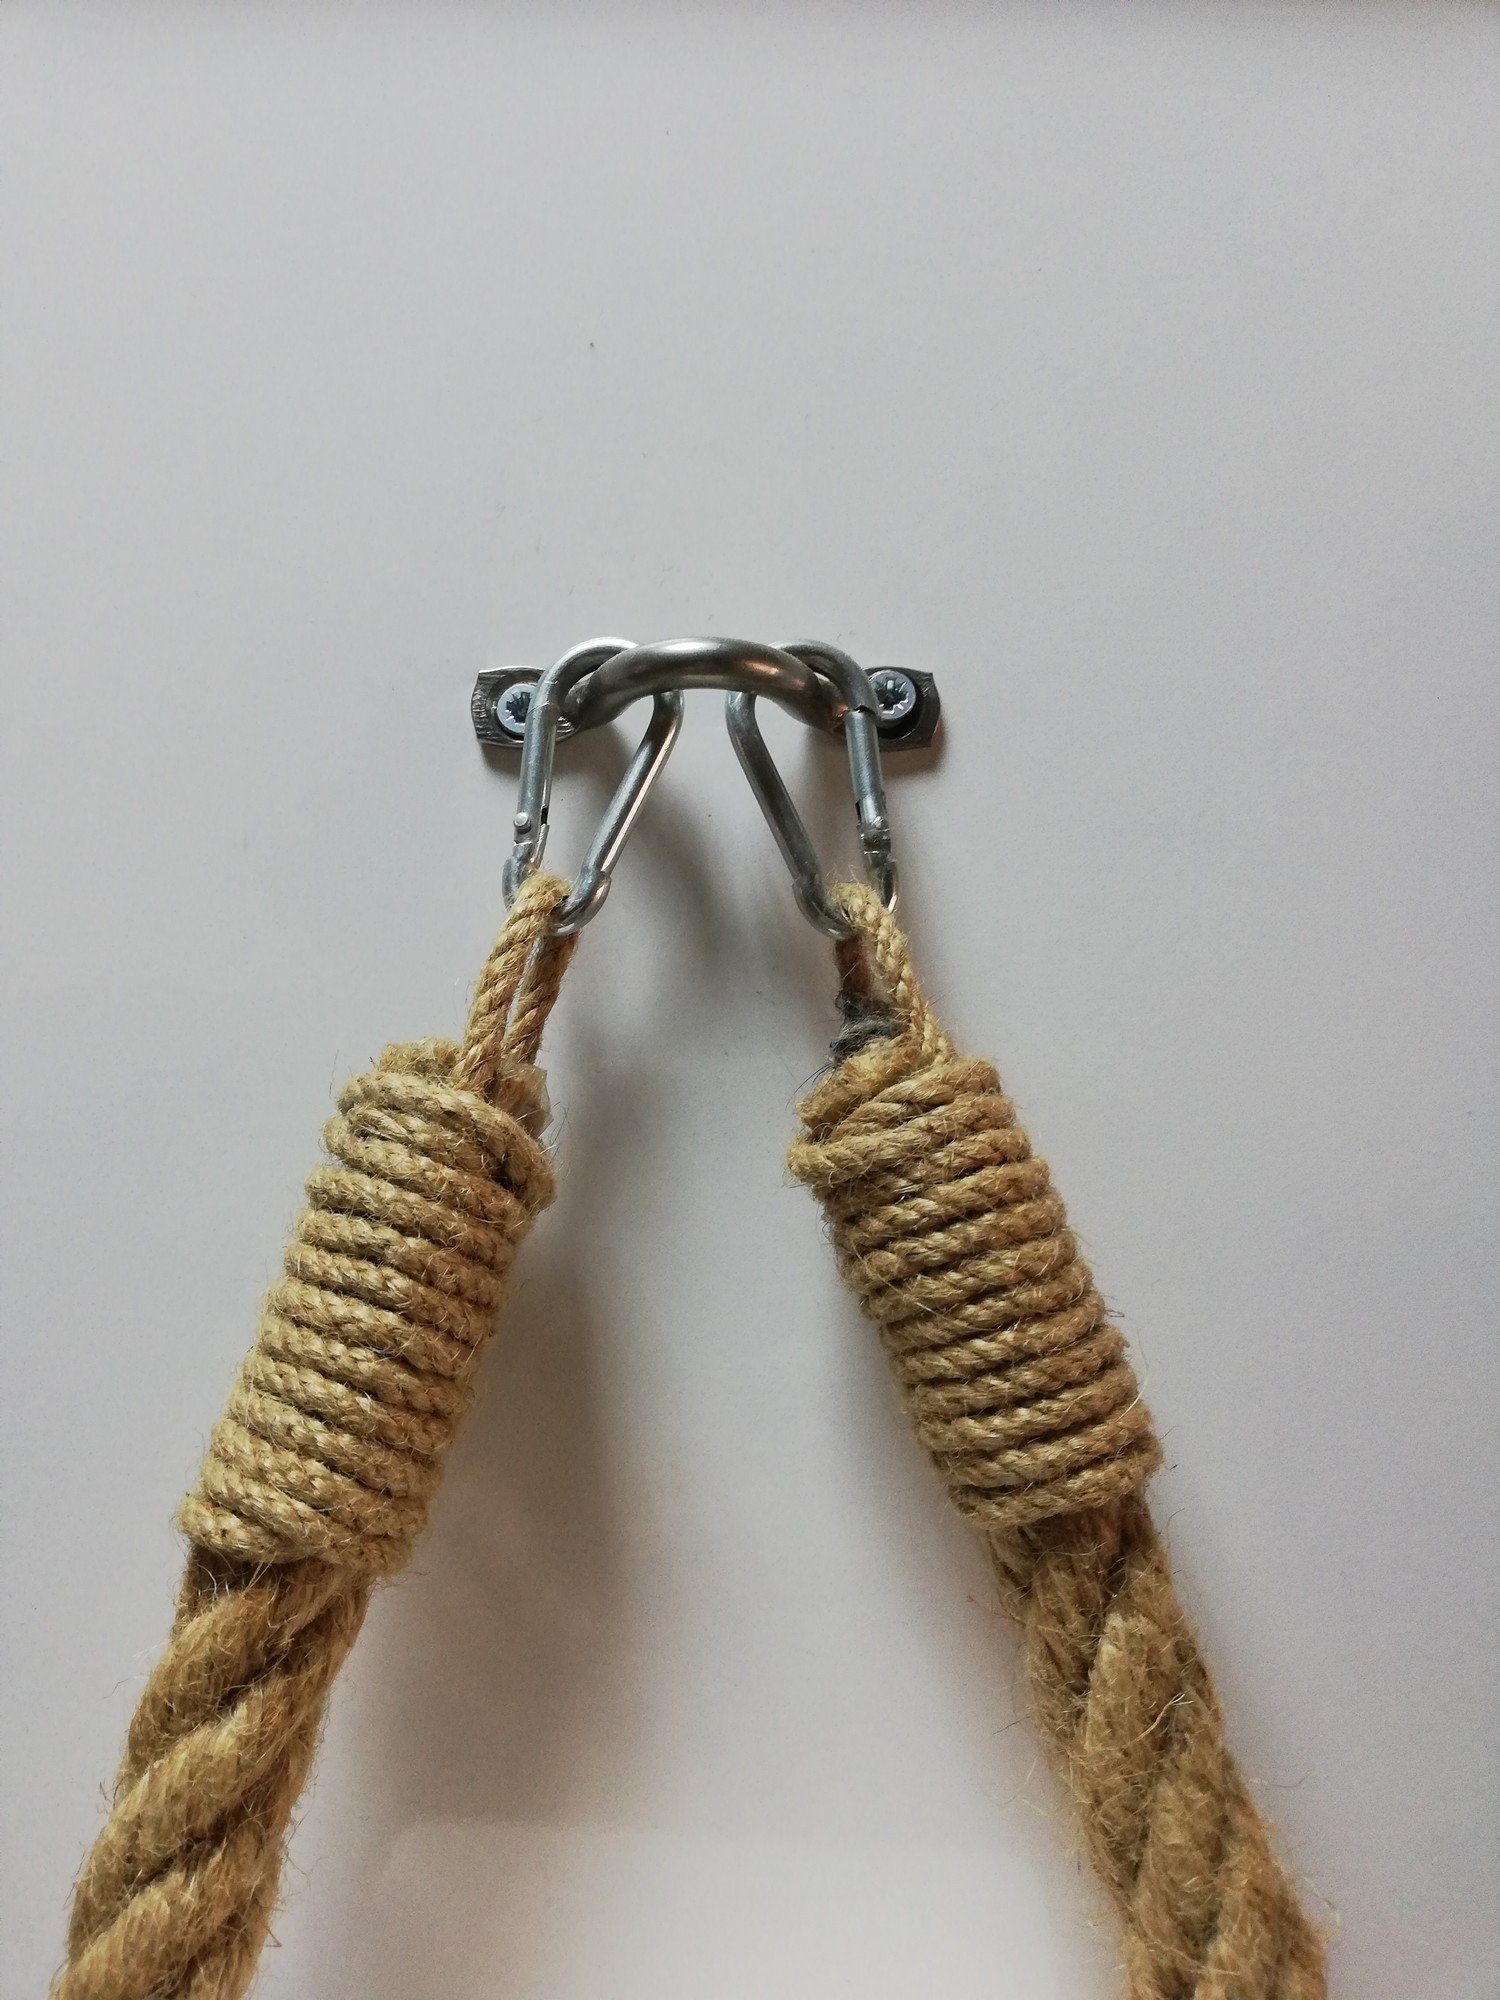 Skye Decor 22x14x3 Metall Seil cm, haken, und 100% Handtuchhalter